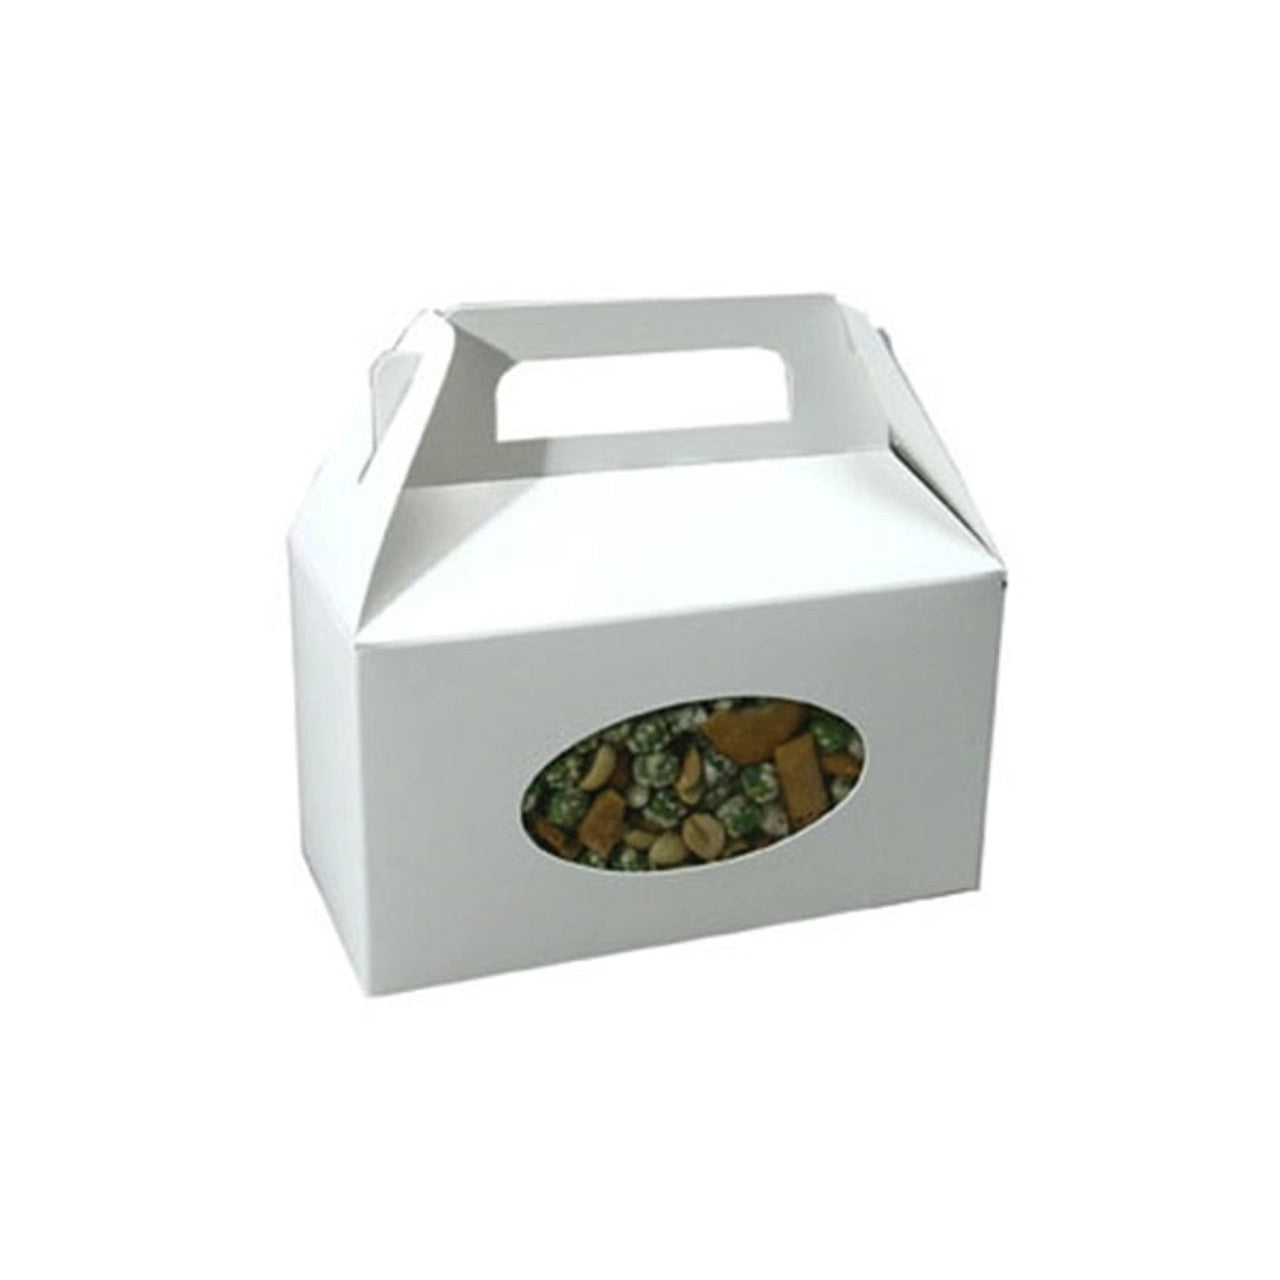 White, Horizontal Tote Candy Box, 1 LB, 1 Piece Folding Box